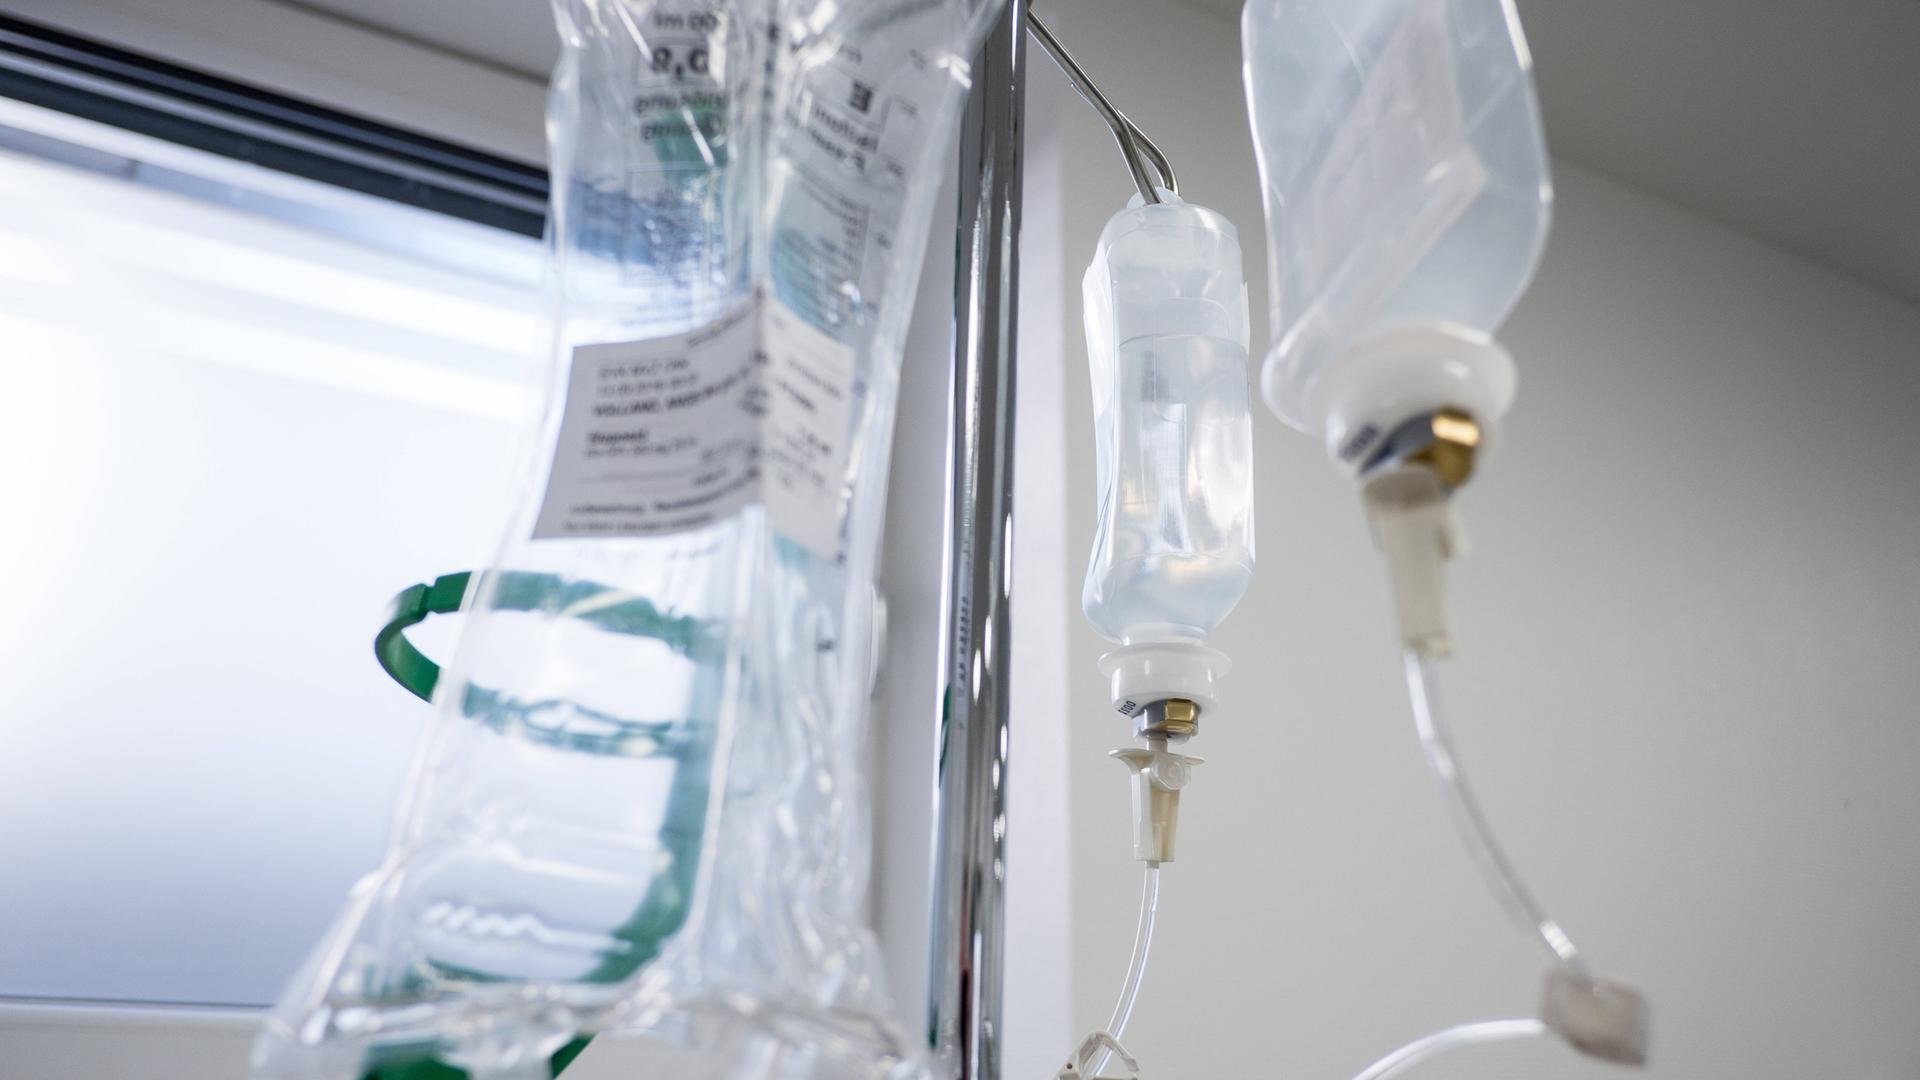 Infusionen für eine Chemotherapie hängen an einem Ständer.